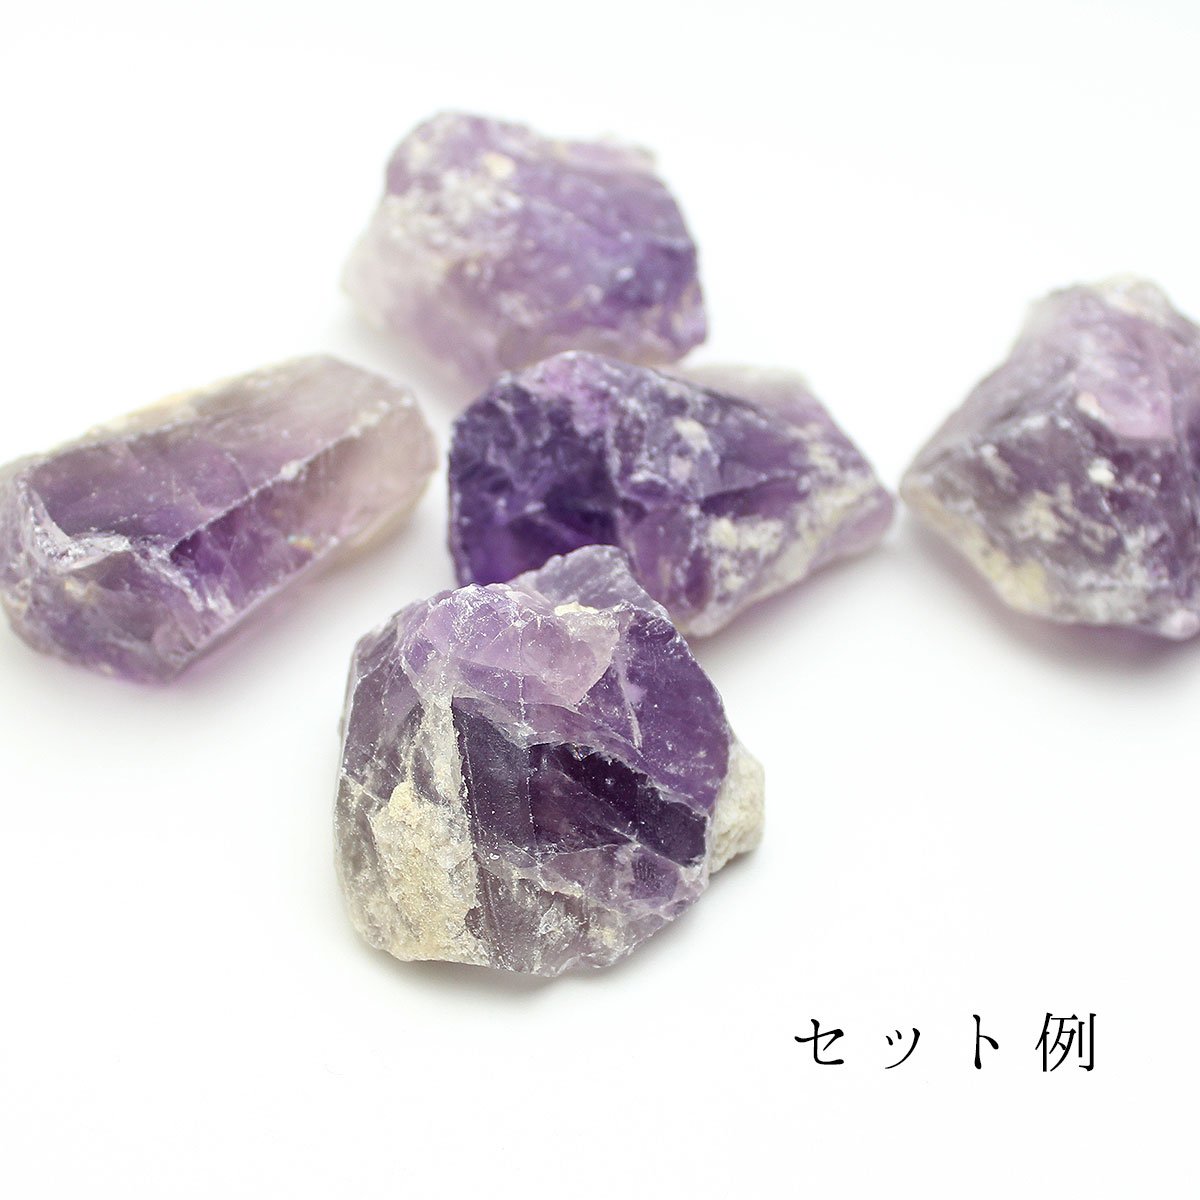 アメジスト 紫水晶 原石 約930g パワーストーン重さ約930g - 置物